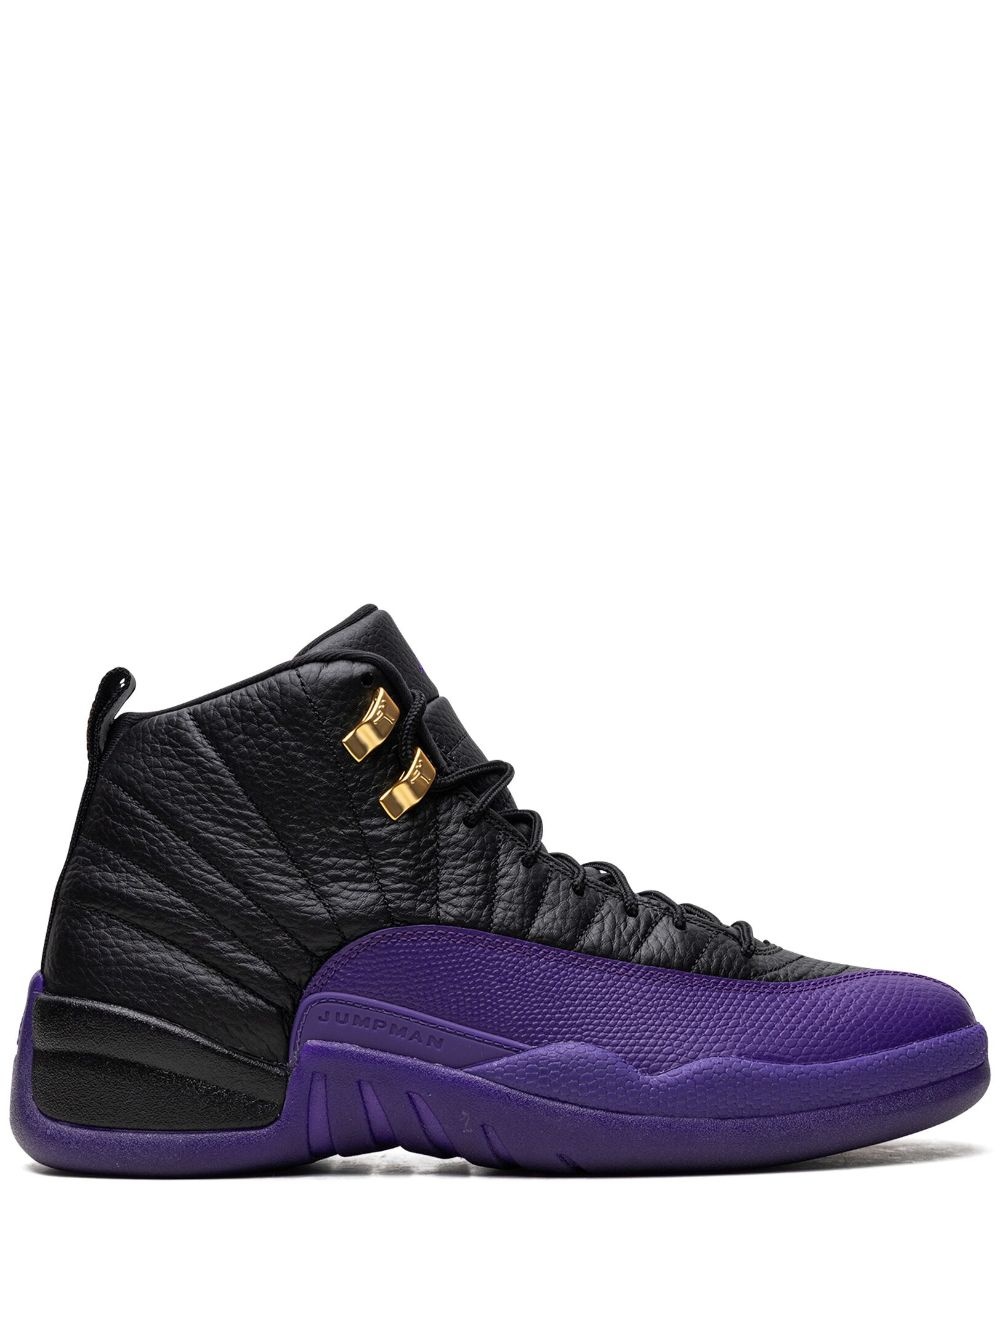 Air Jordan 12 "Field Purple" sneakers - 1